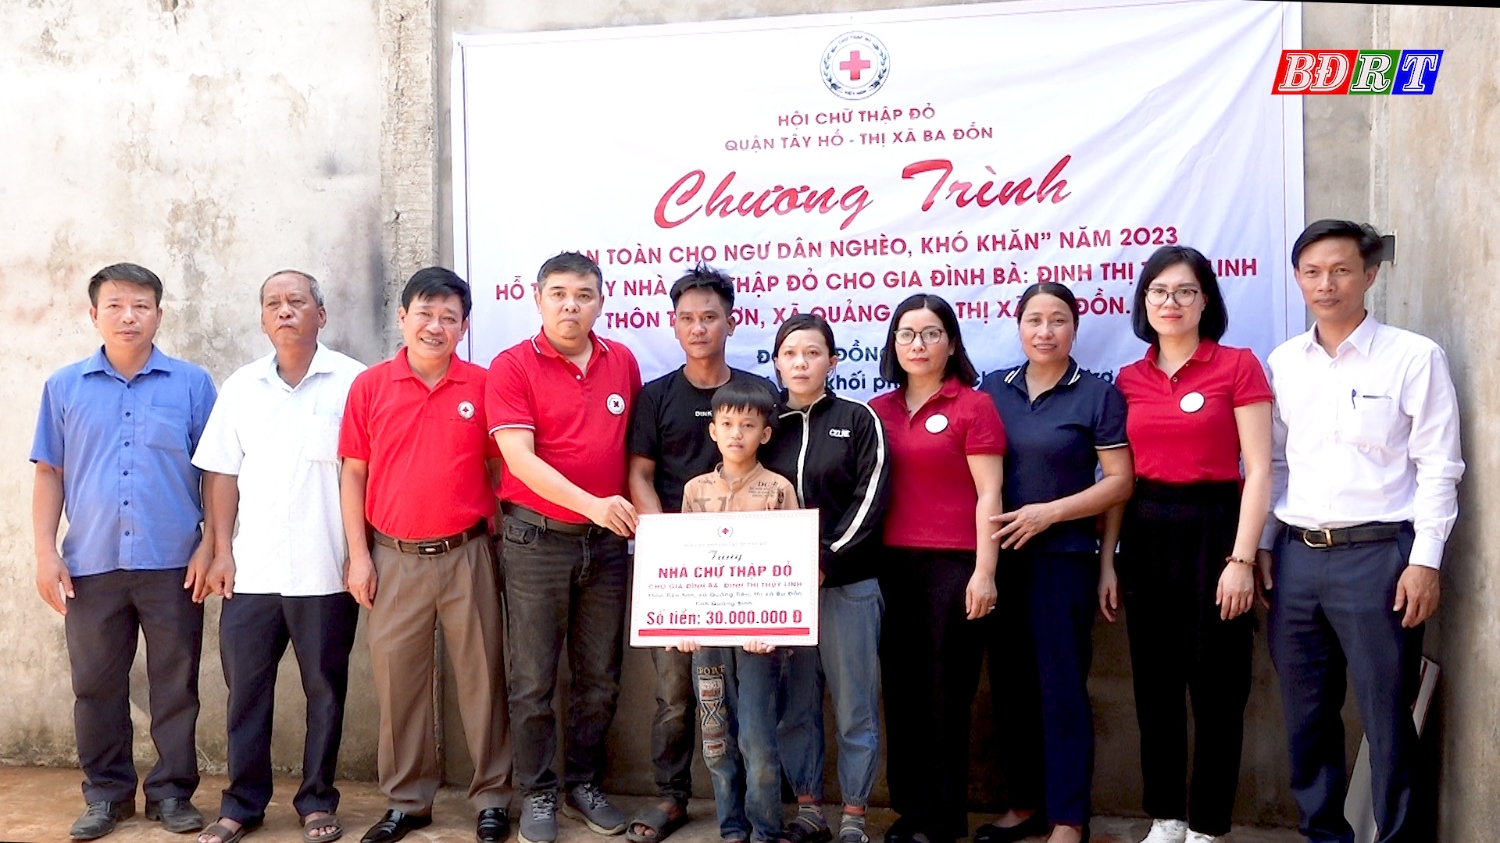 Tặng nhà chữ thập đỏ cho gia đình chị Đinh Thị Thùy Linh tại xã Quảng Tiên